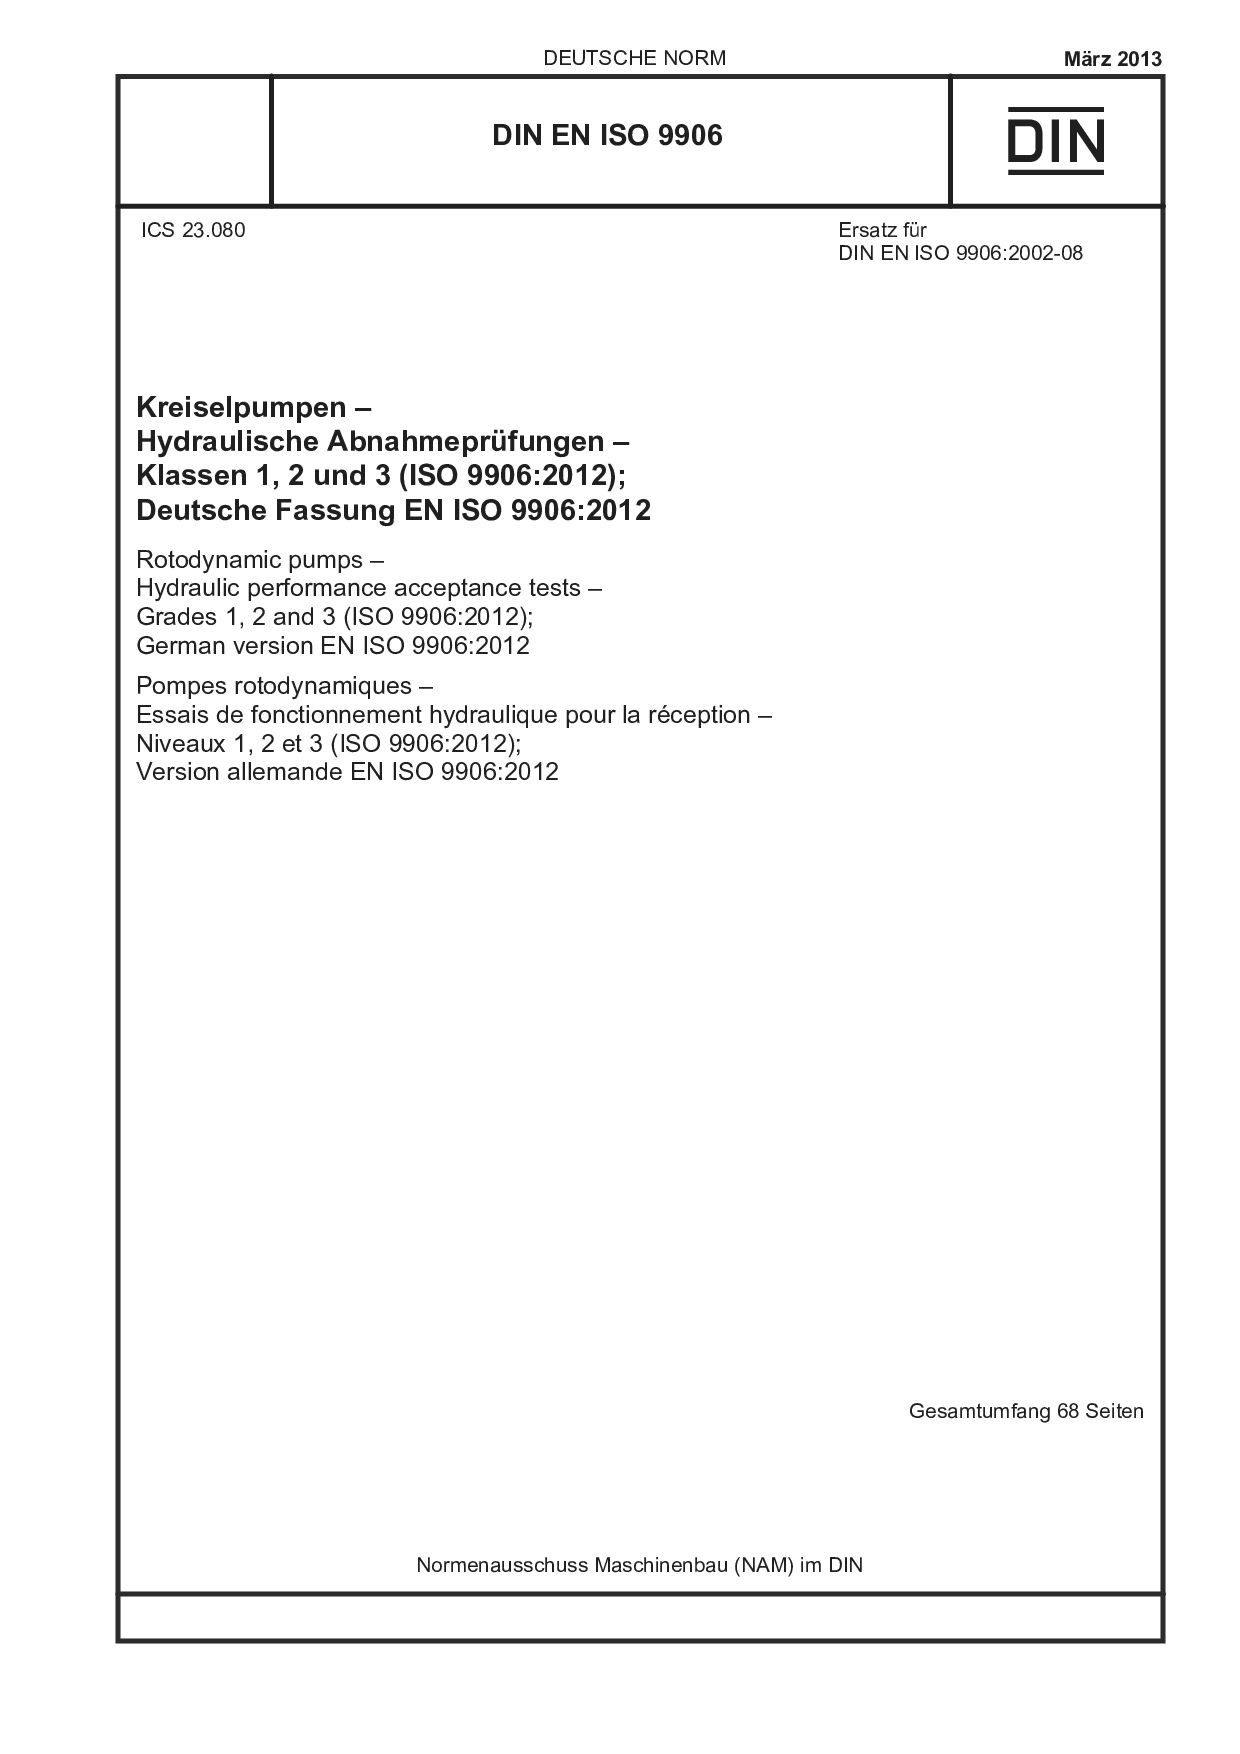 DIN EN ISO 9906:2013封面图